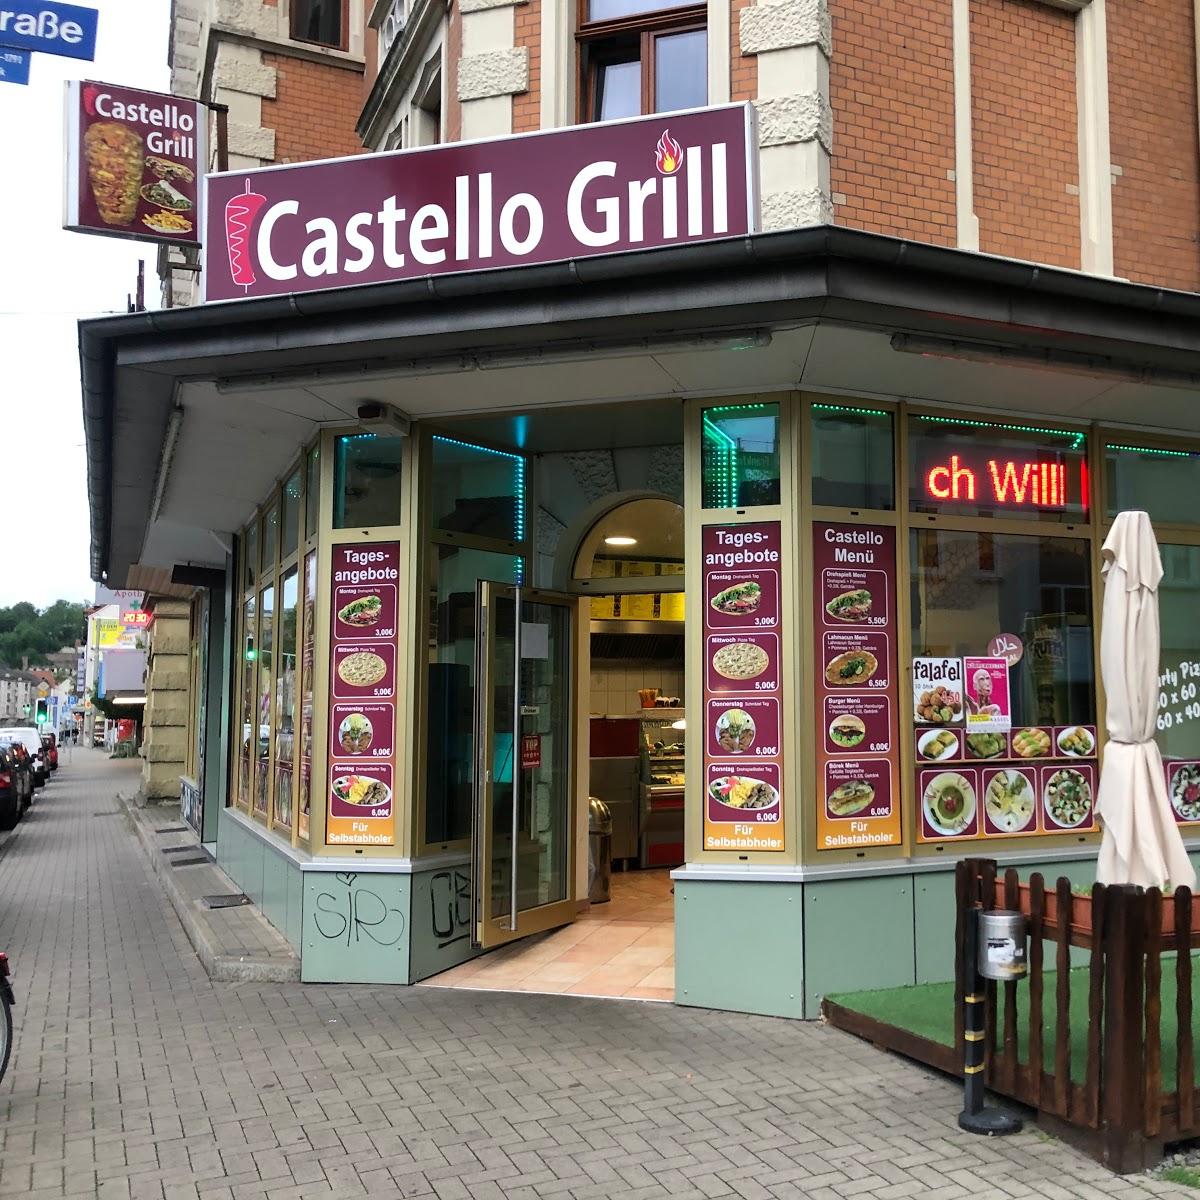 Restaurant "Castello Grill" in Kassel